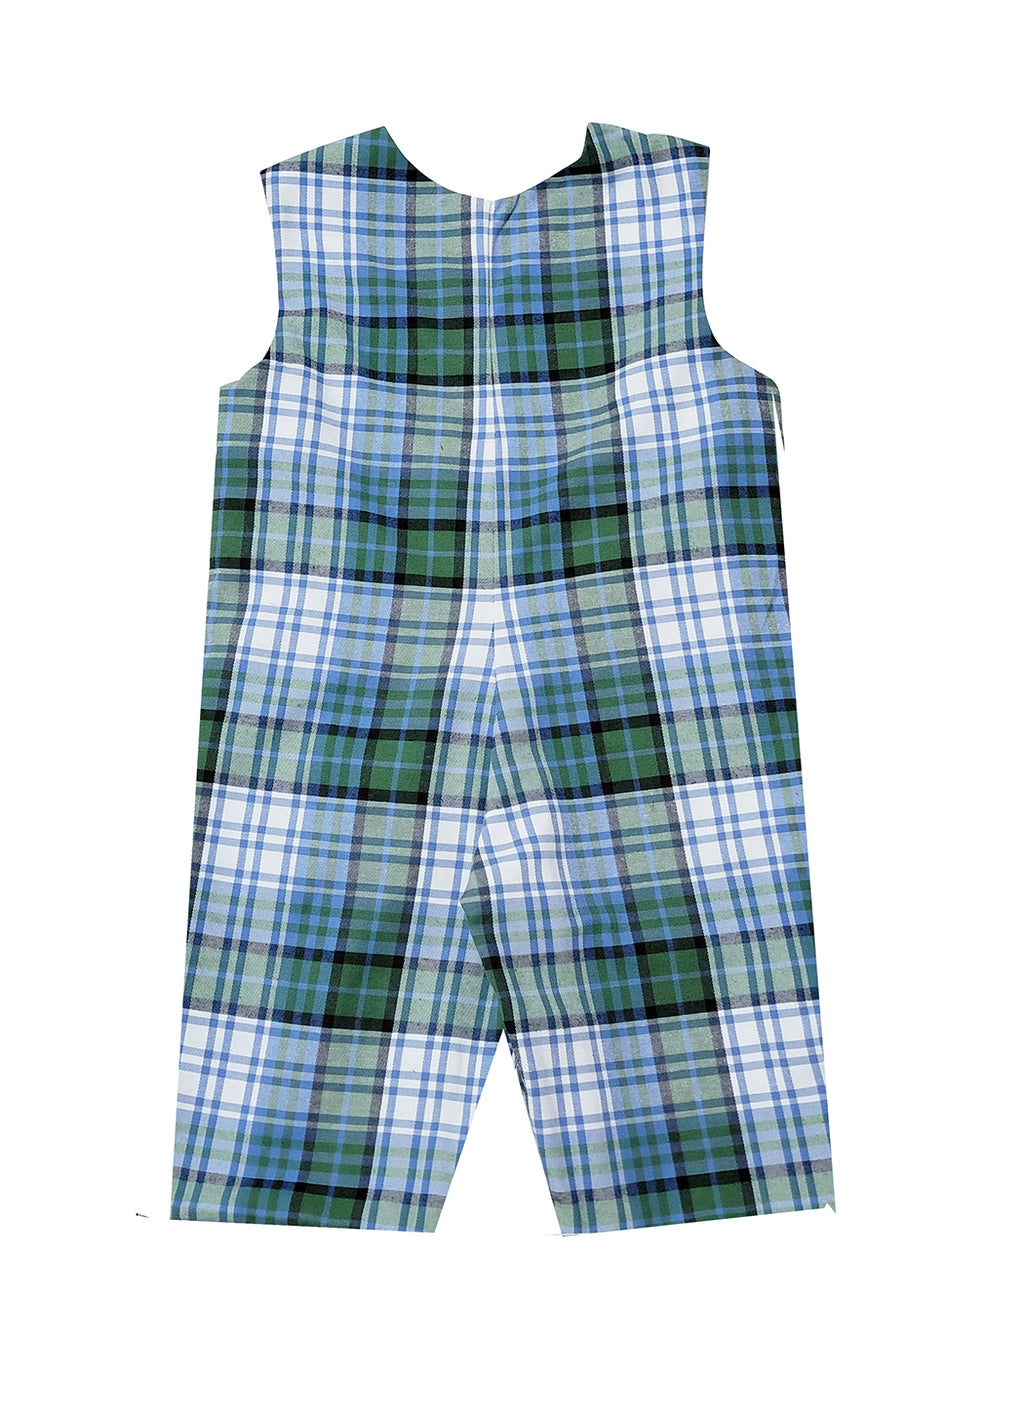 Boy's "Vivi & Brett" Blue Plaid Overall - Little Threads Inc. Children's Clothing